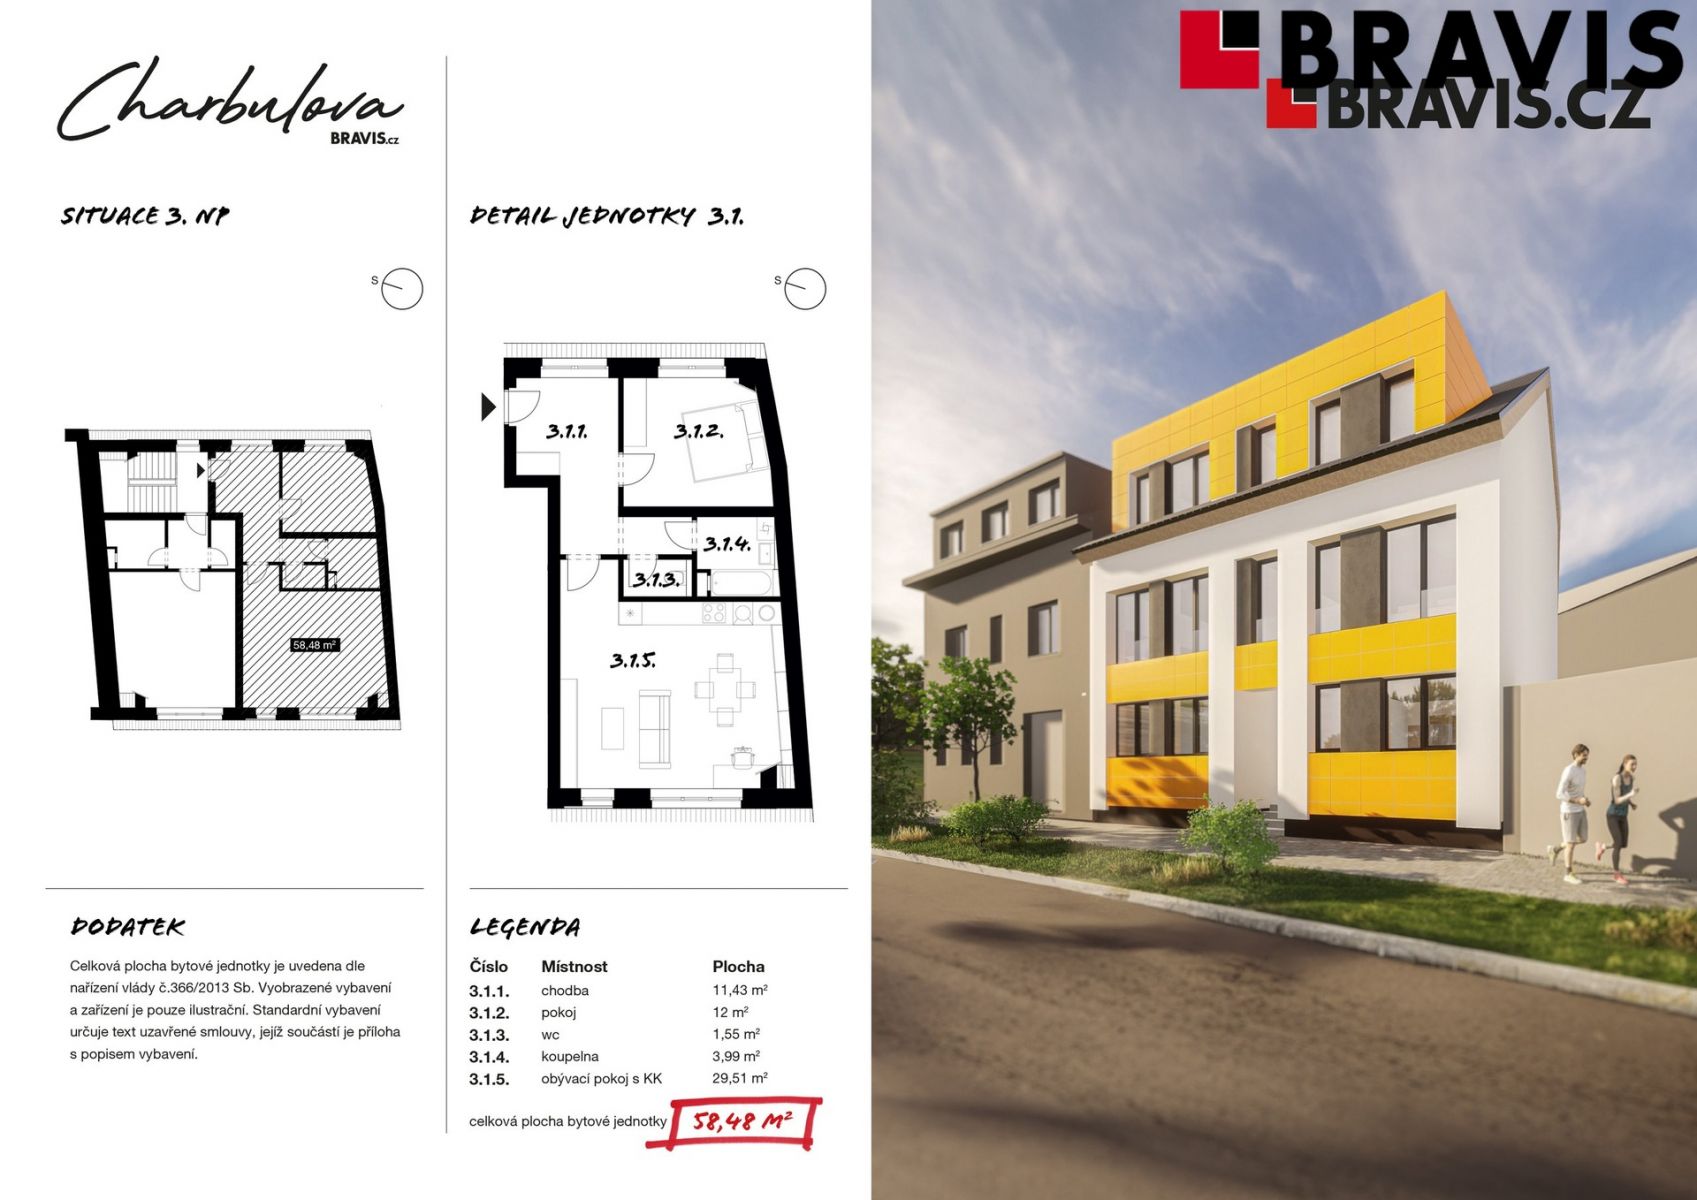 Prodej novostavby bytu 2+kk, ulice Charbulova, Brno - Černovice, možnost parkování, obrázek č. 3